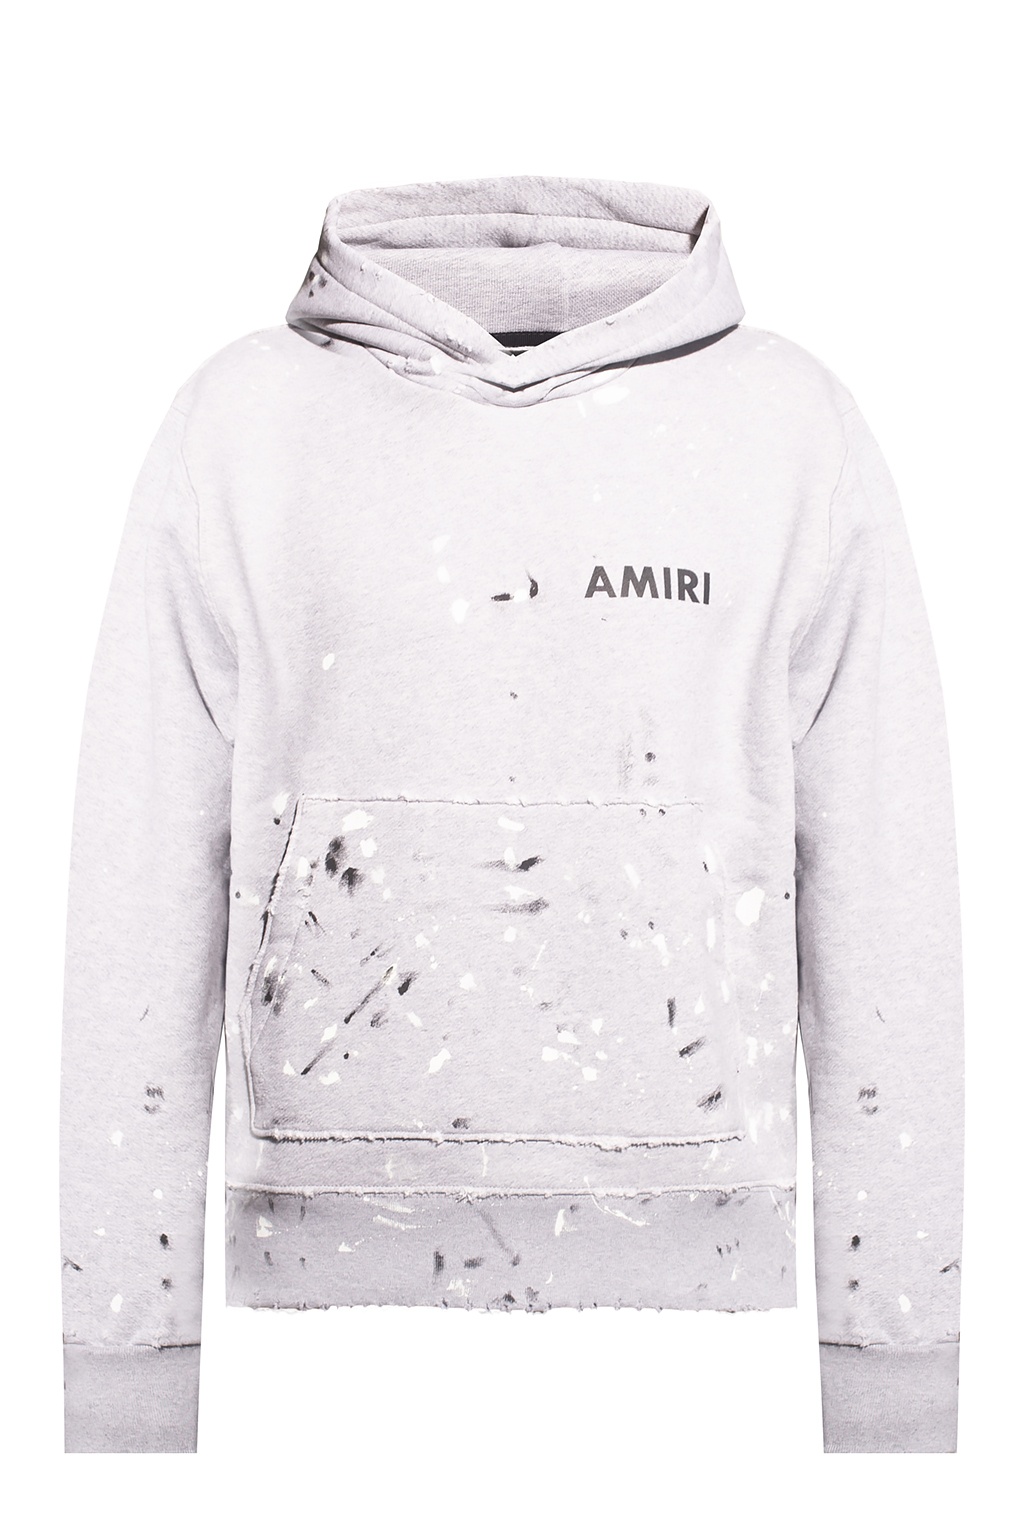 amiri paint drip hoodie white